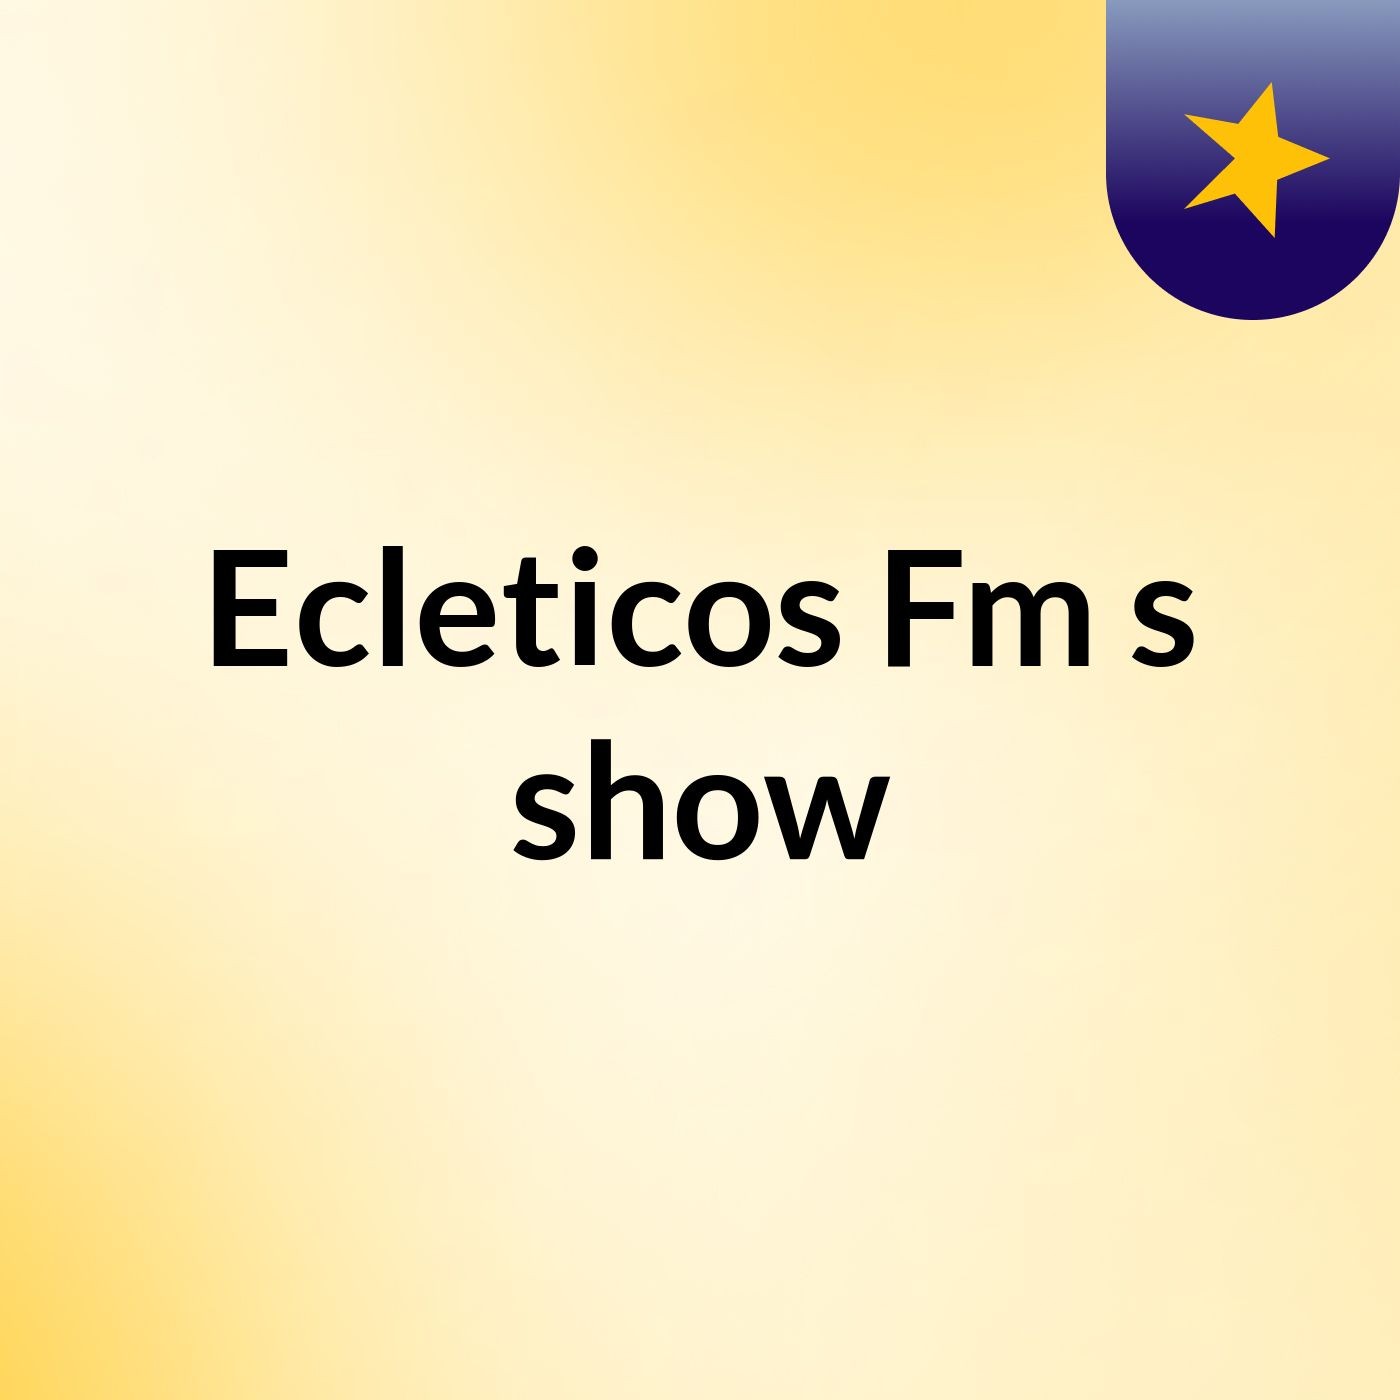 Ecleticos Fm's show